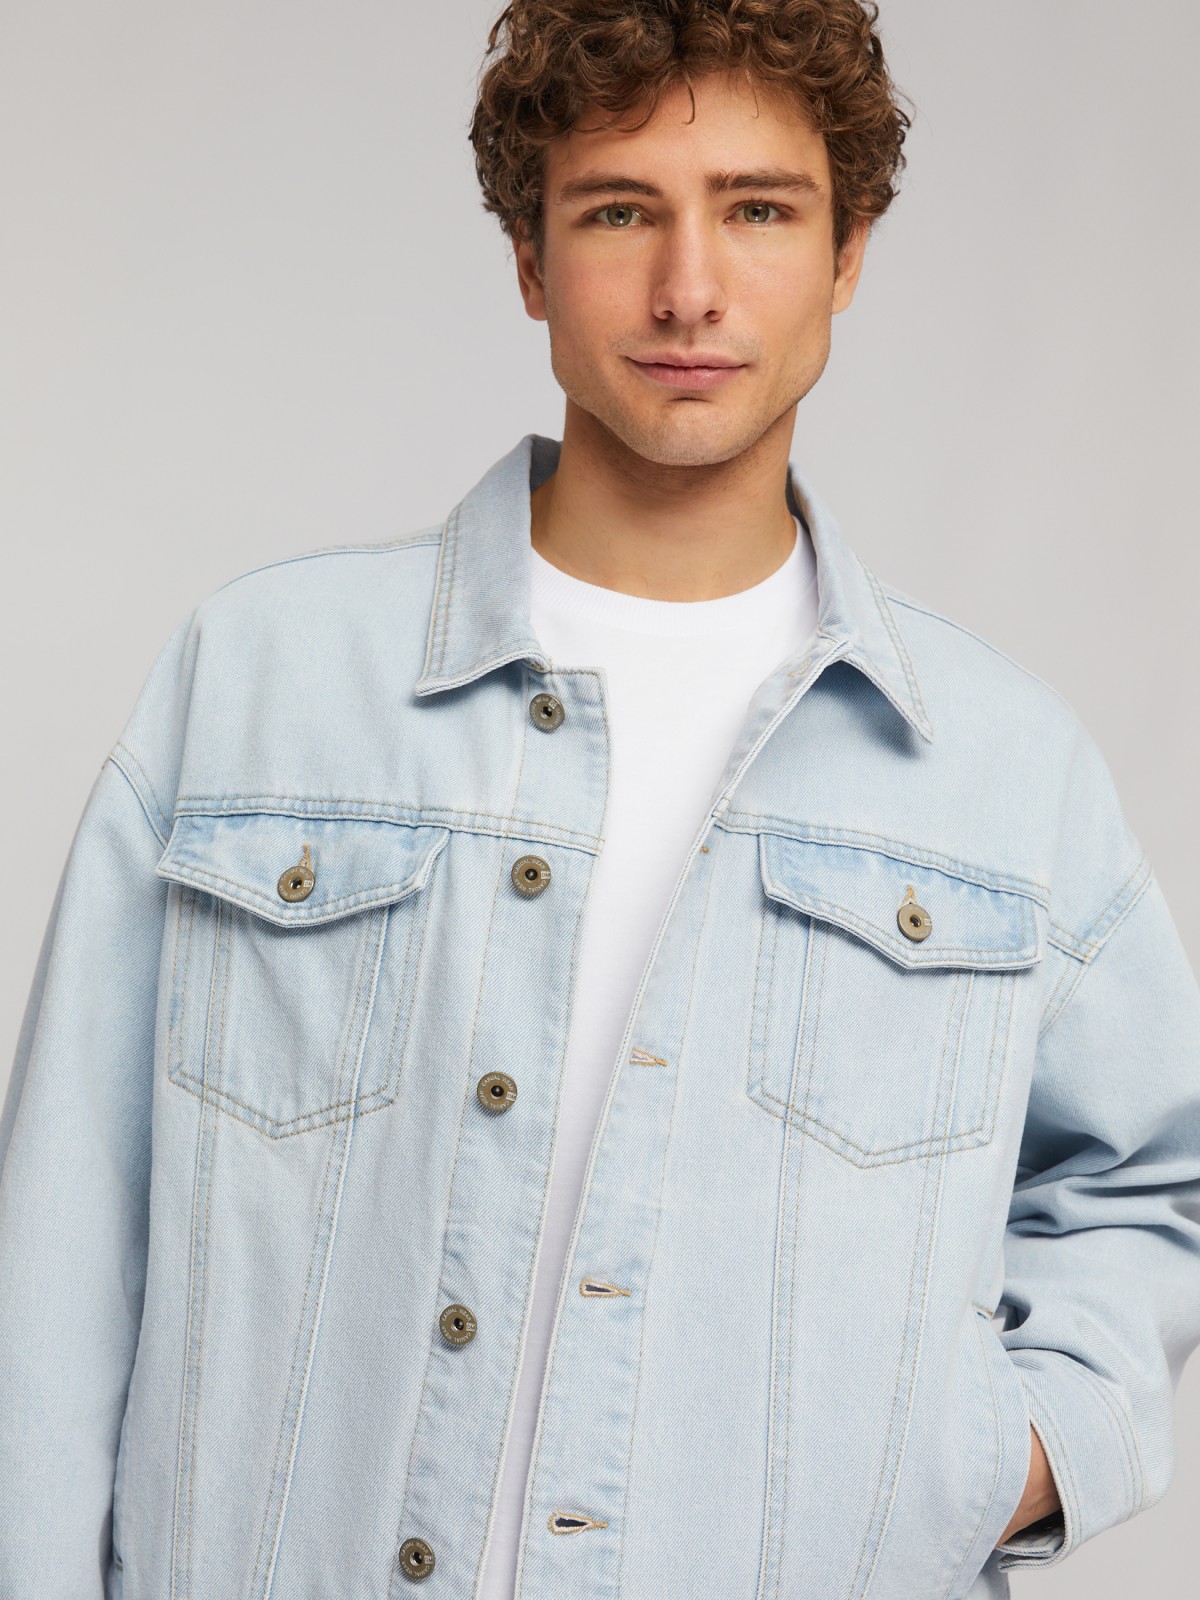 Джинсовая куртка-рубашка свободного фасона zolla 214225D1S031, цвет голубой, размер L - фото 5